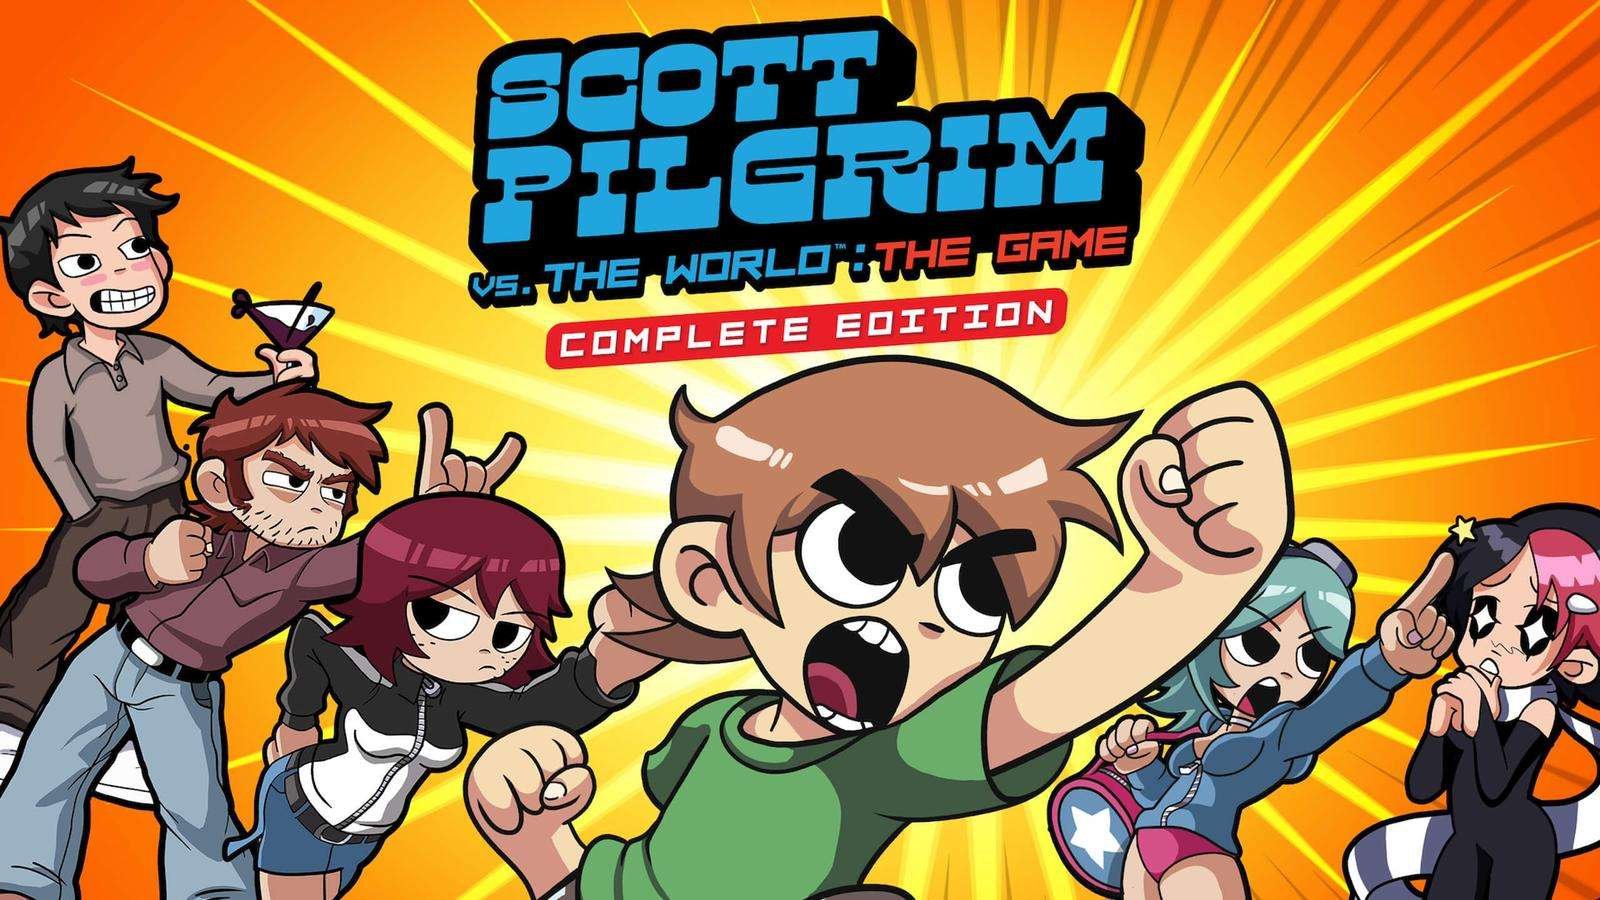 مراجعة - Scott Pilgrim Vs. The World: The Game - Complete Edition